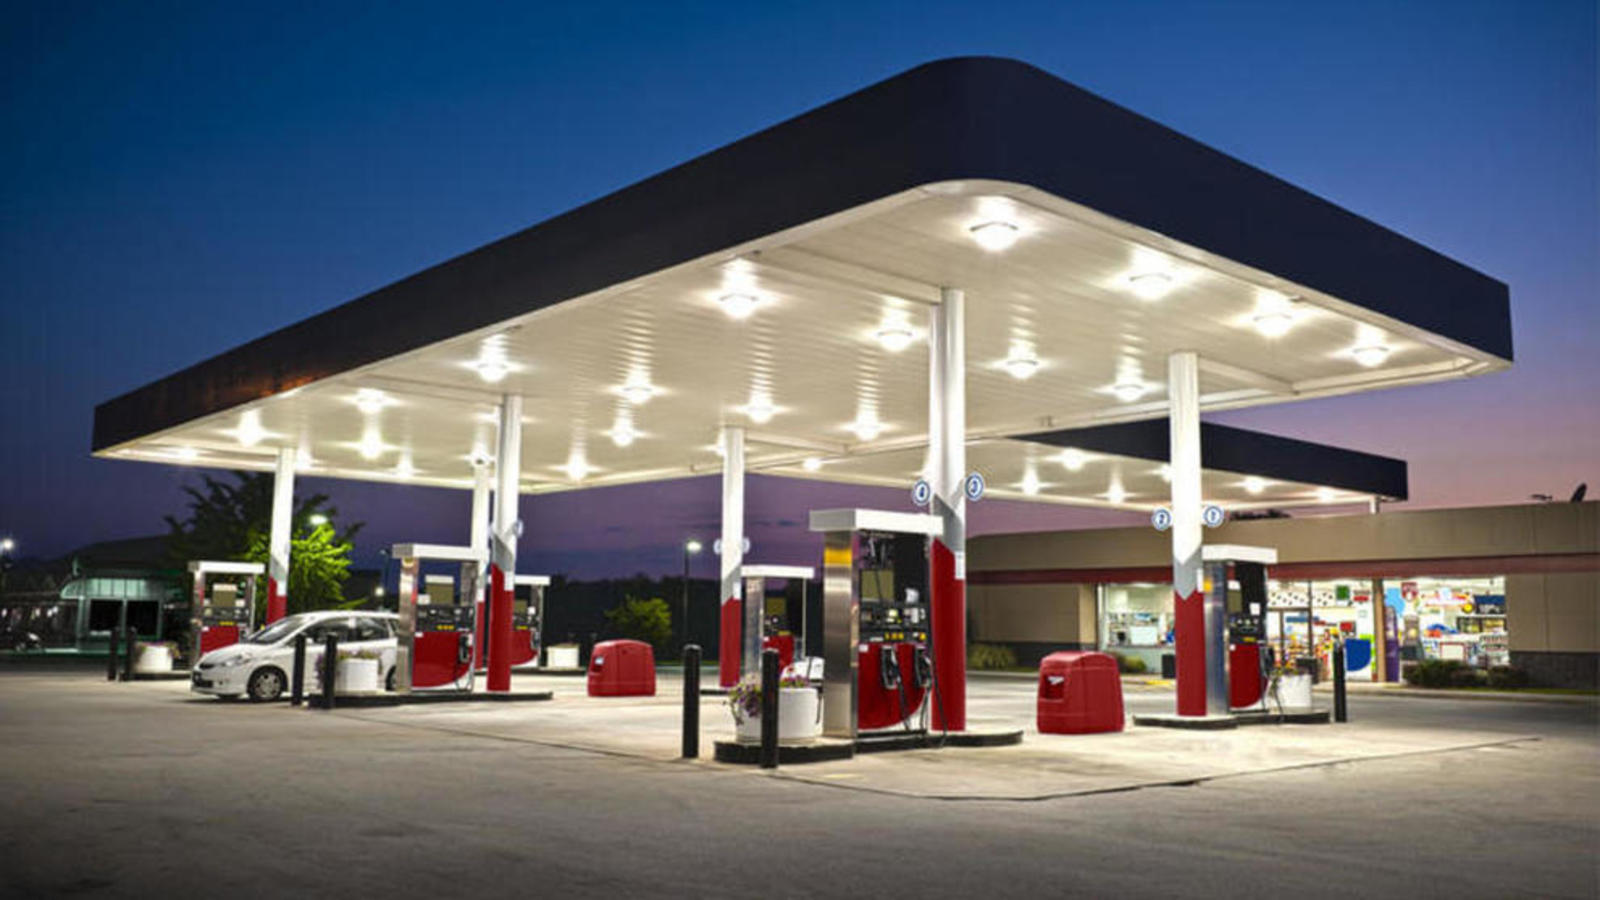 37 marcas de gasolineras a la fecha; los precios siguen a la alza -  Comisión Reguladora del Transporte de Michoacán